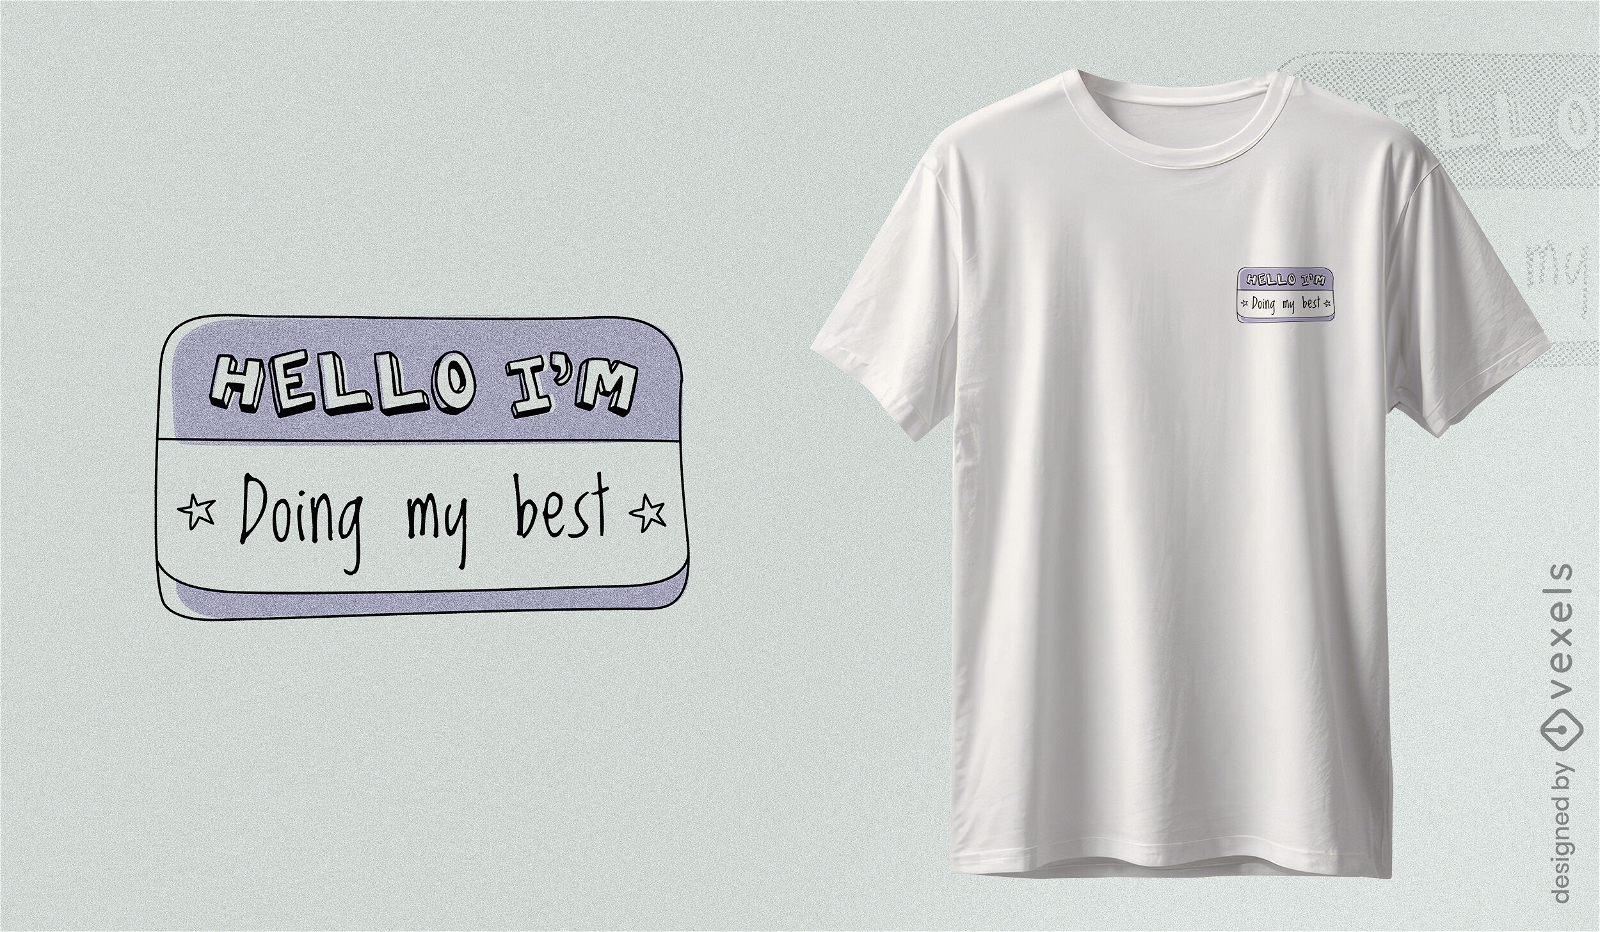 Self-awareness slogan t-shirt design